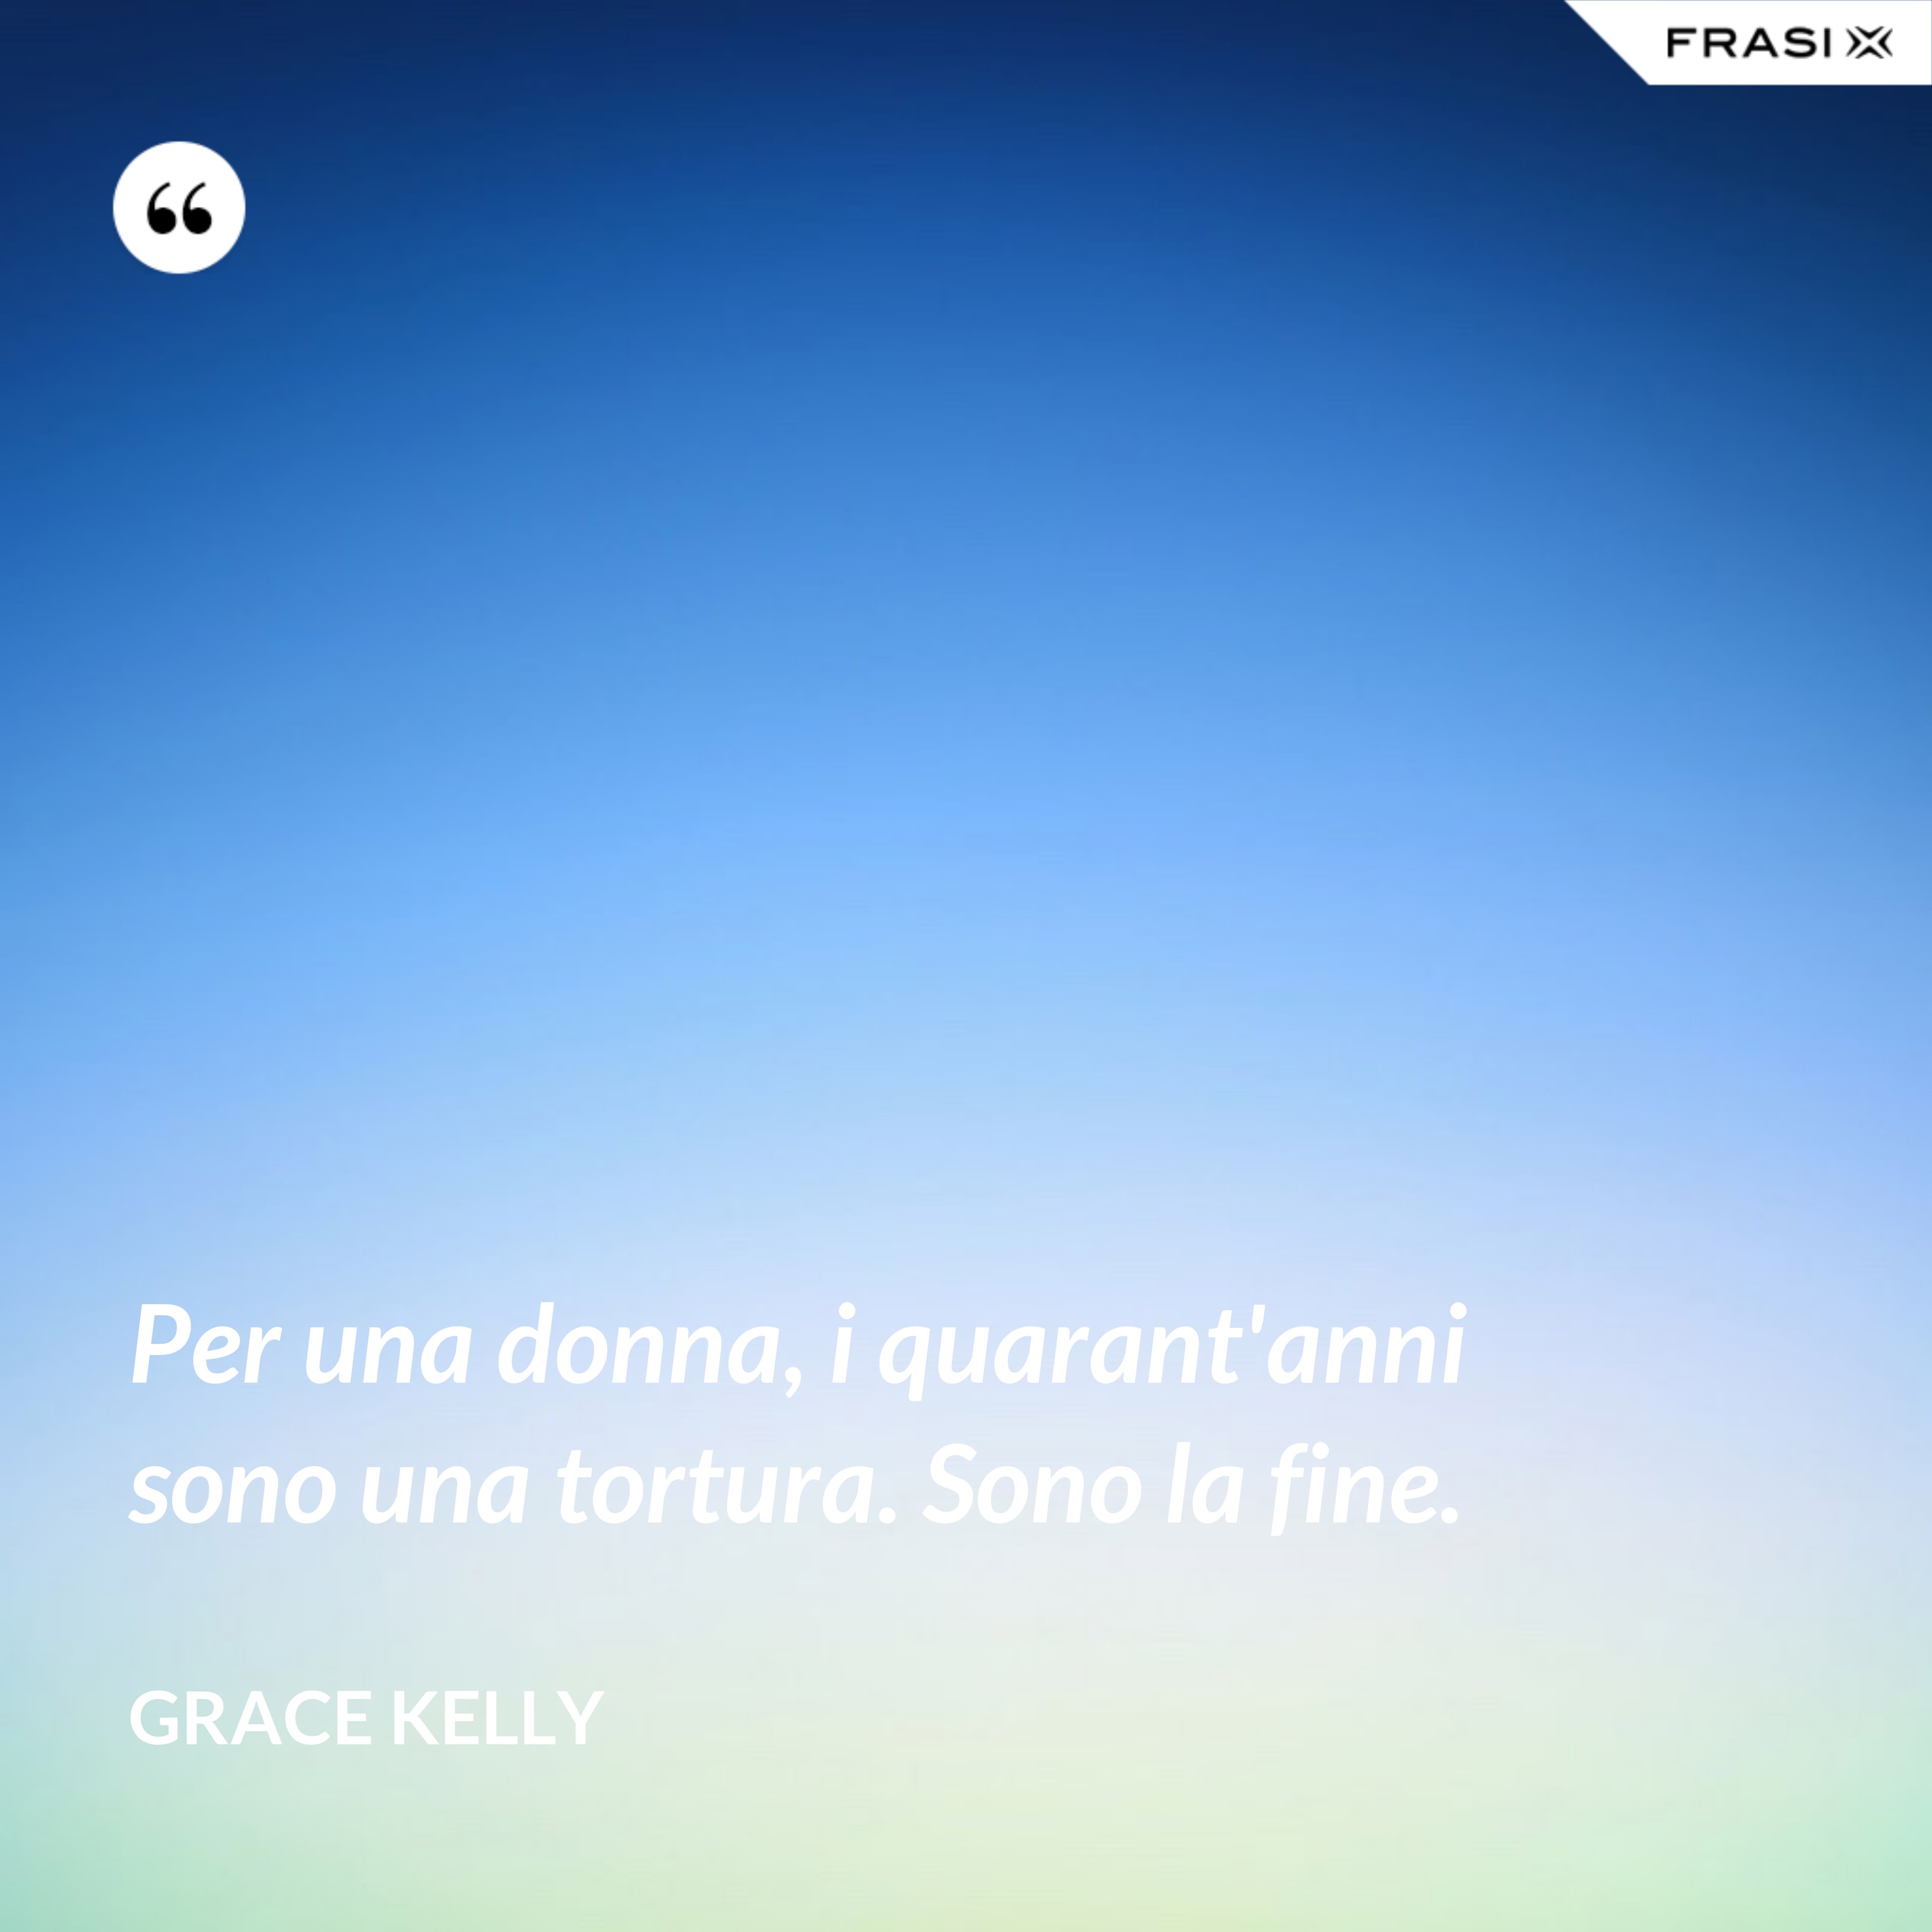 Per una donna, i quarant'anni sono una tortura. Sono la fine. - Grace Kelly